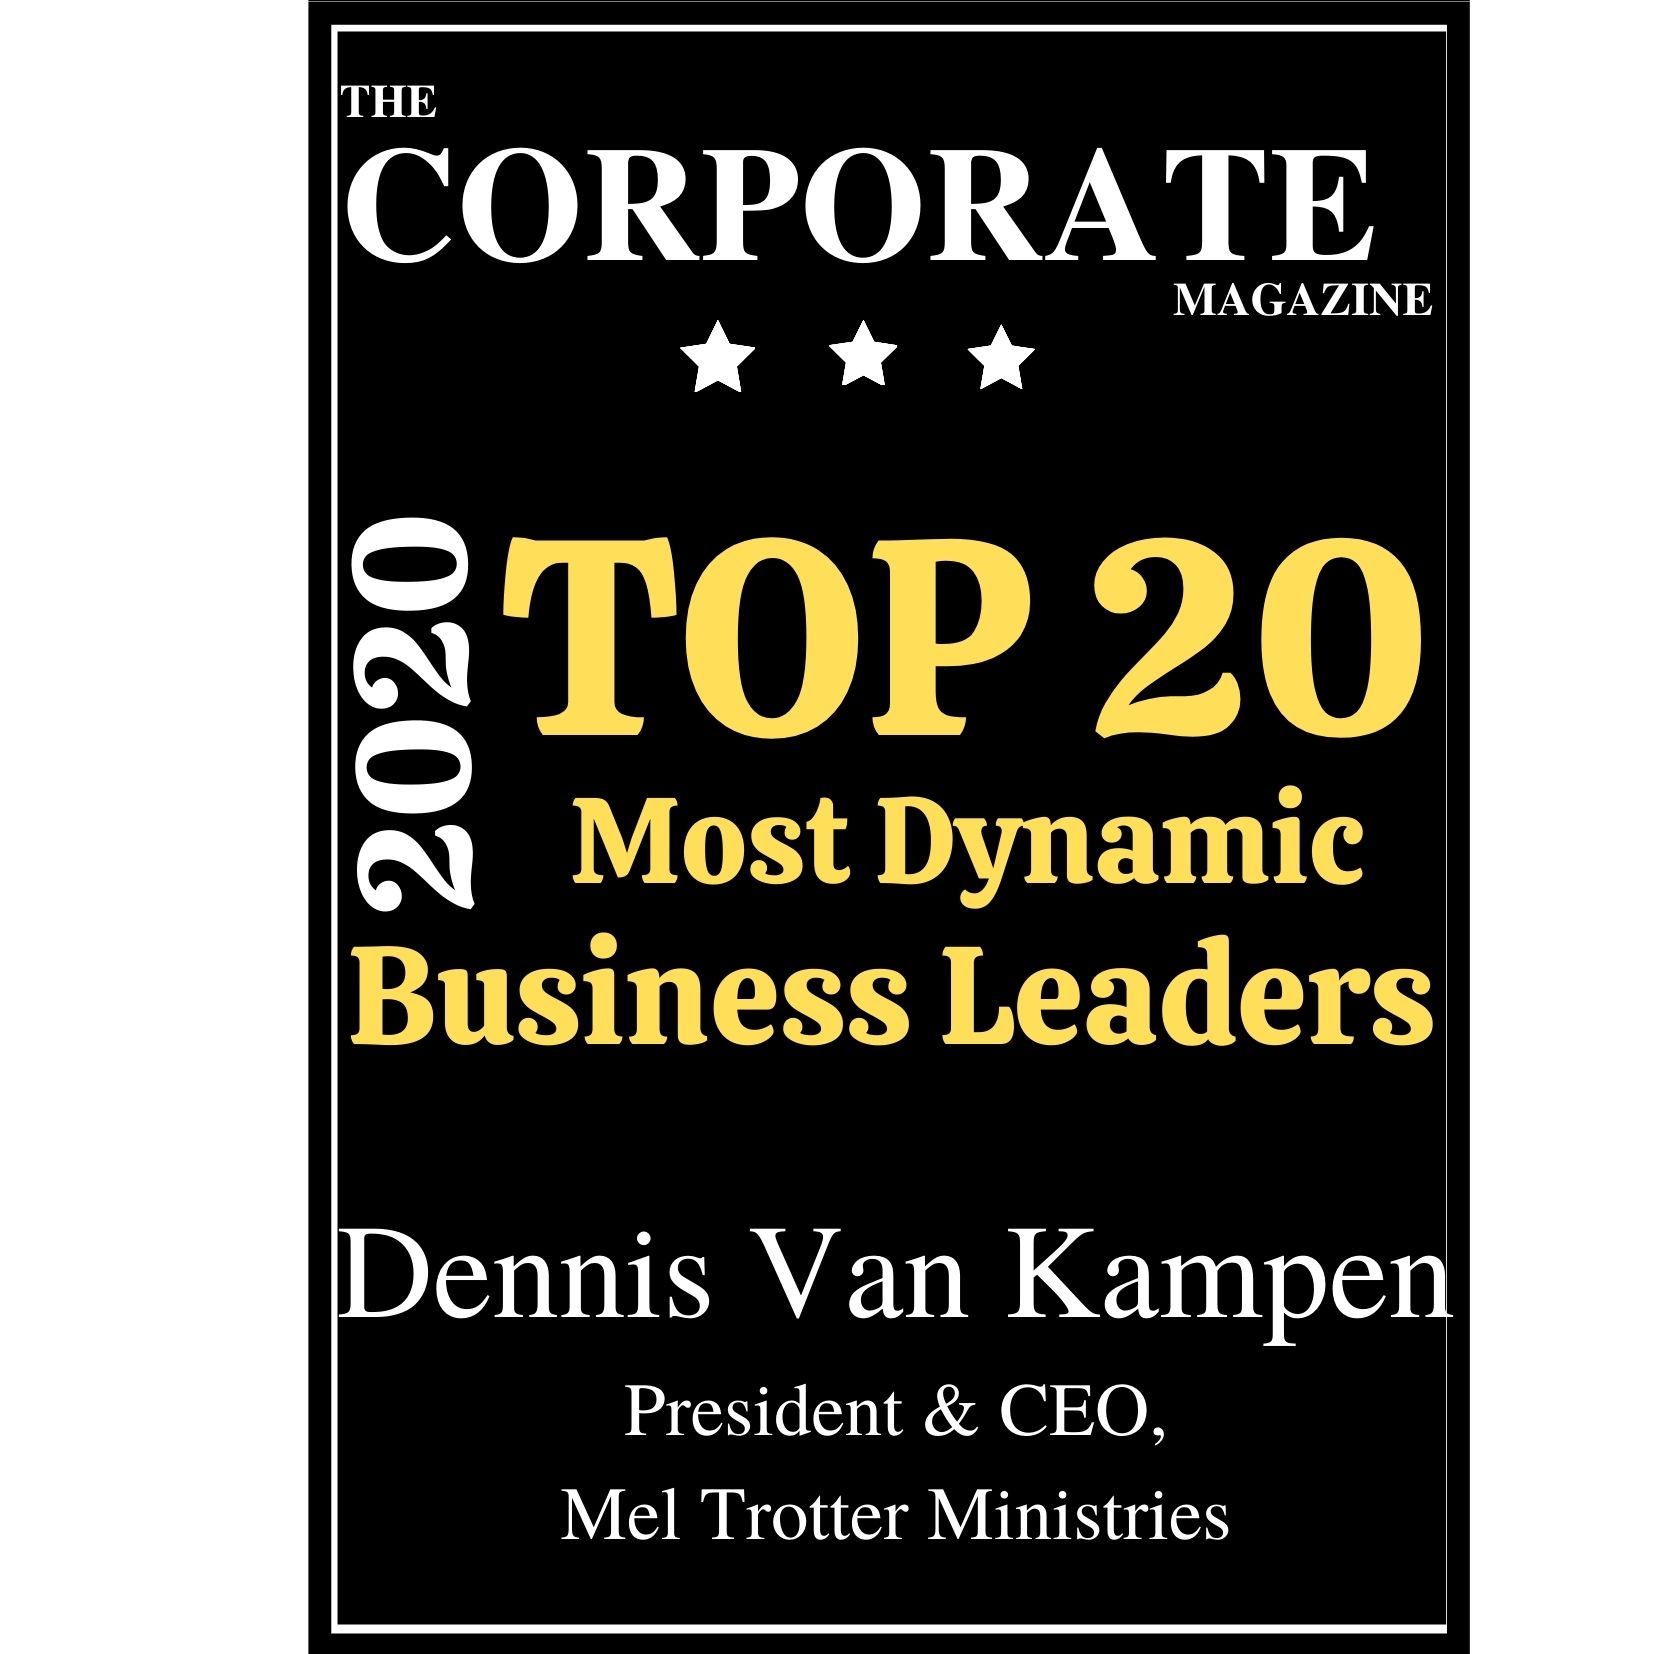 Dennis-Van-Kampen-Business-Leaders-2020